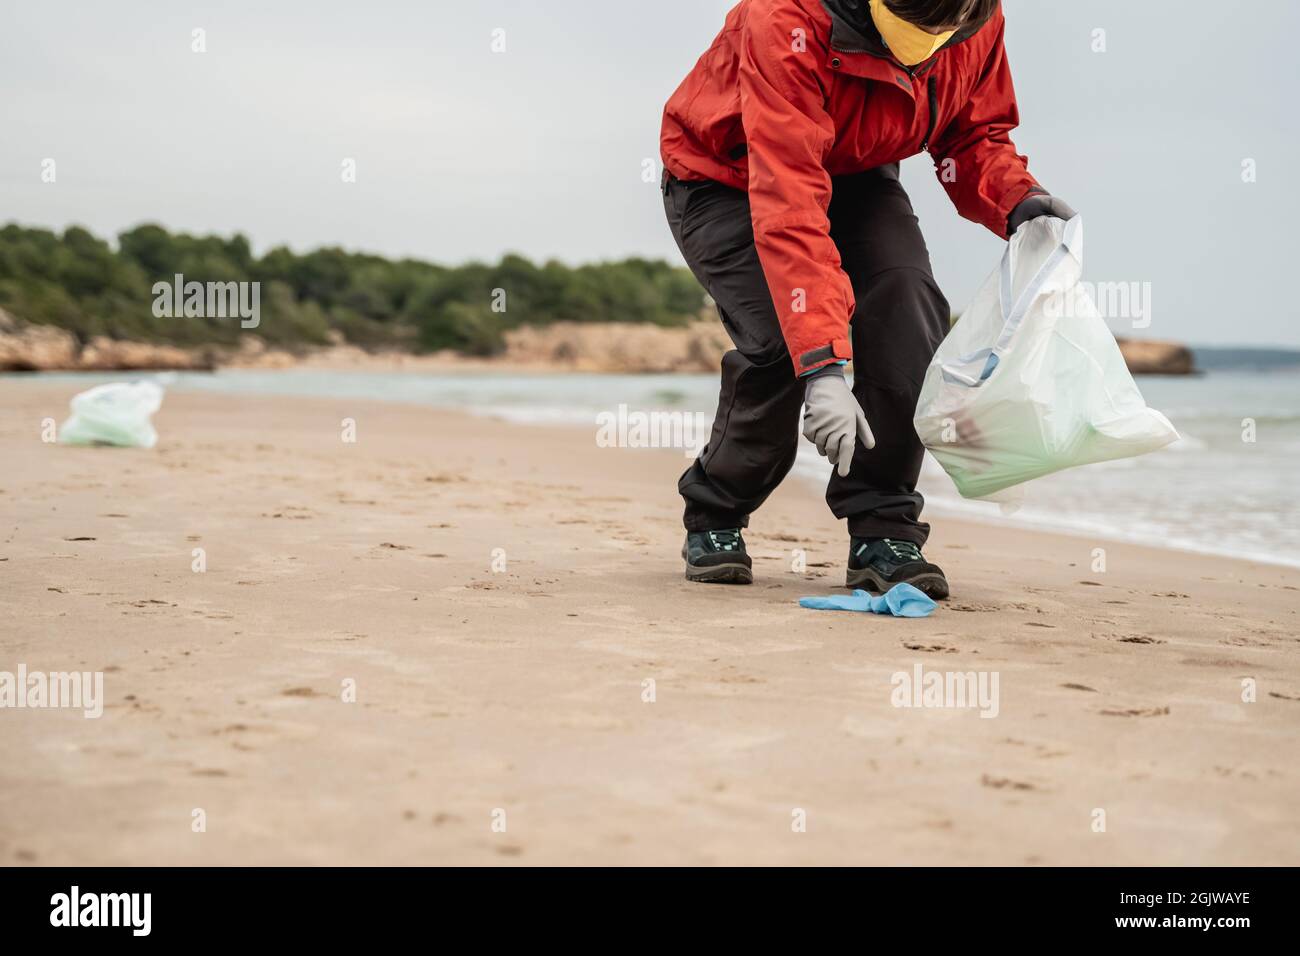 Giovane volontario pulisce plastica e rifiuti dalla spiaggia in spiaggia durante coronavirus pandemic - ambiente e ecologia problema concetto Foto Stock